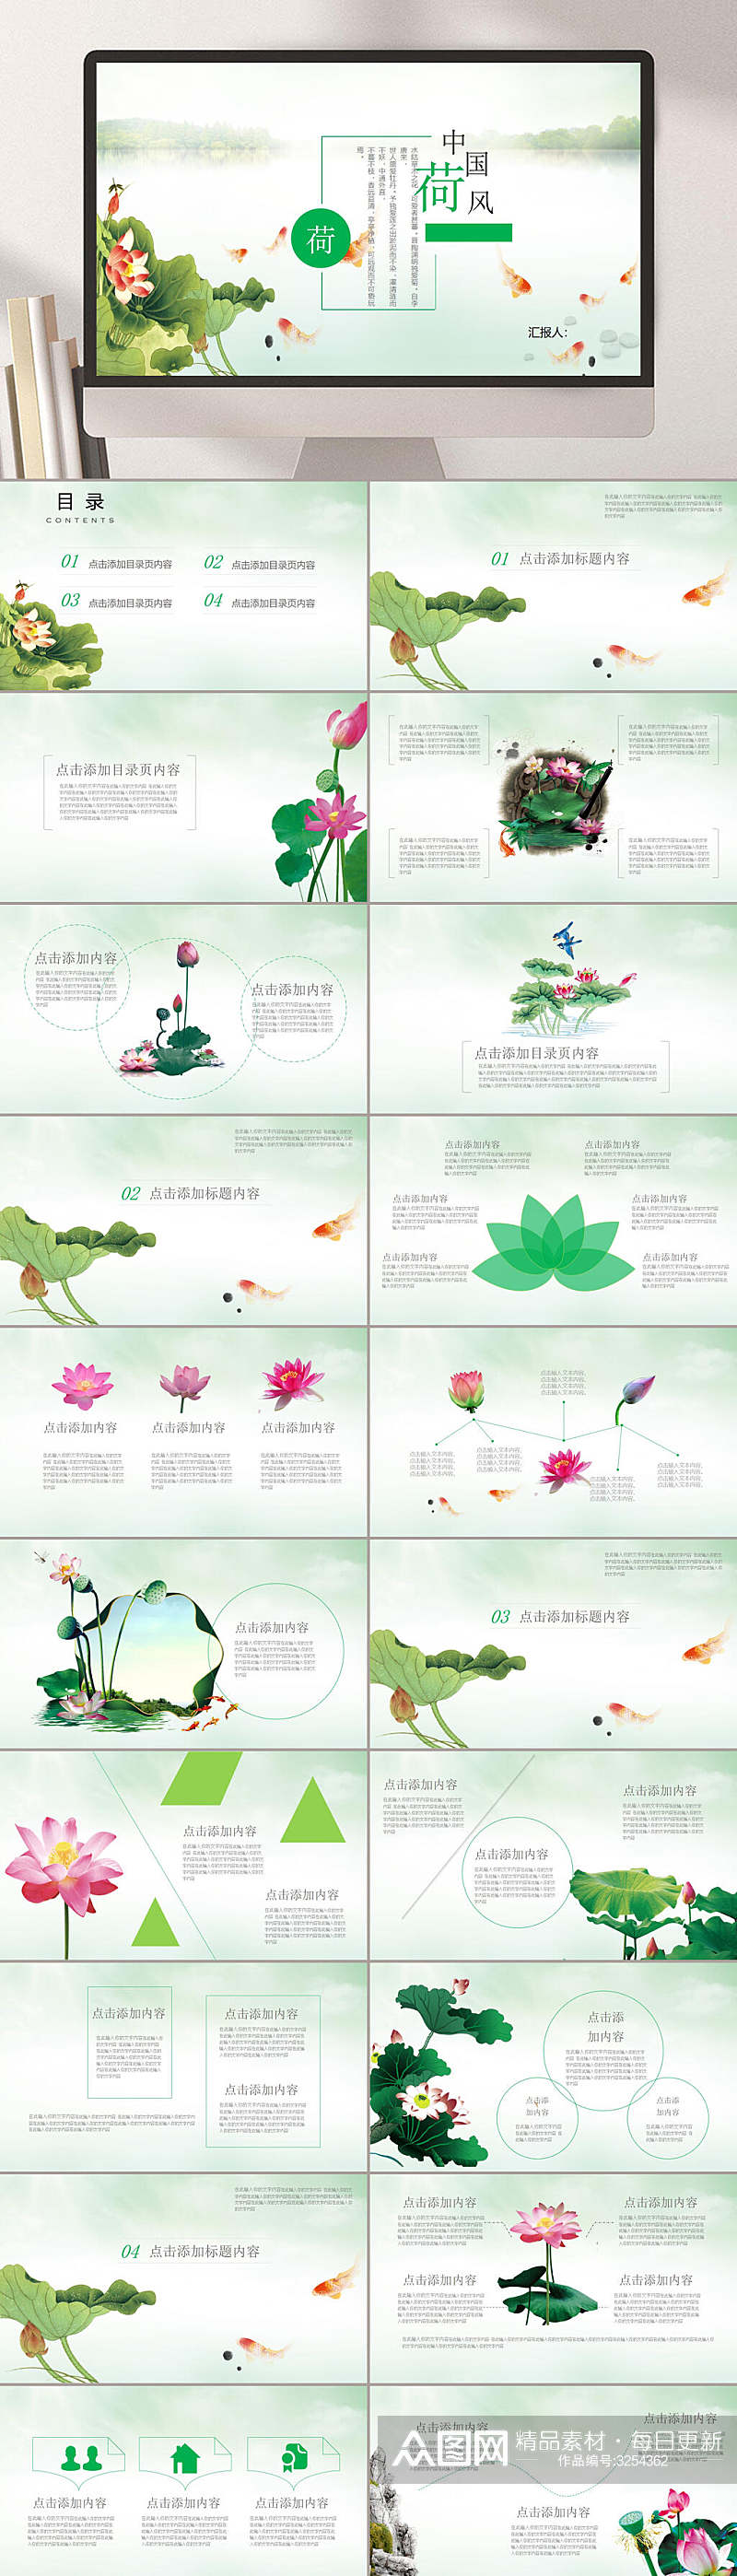 绿色荷叶创意中国风PPT素材